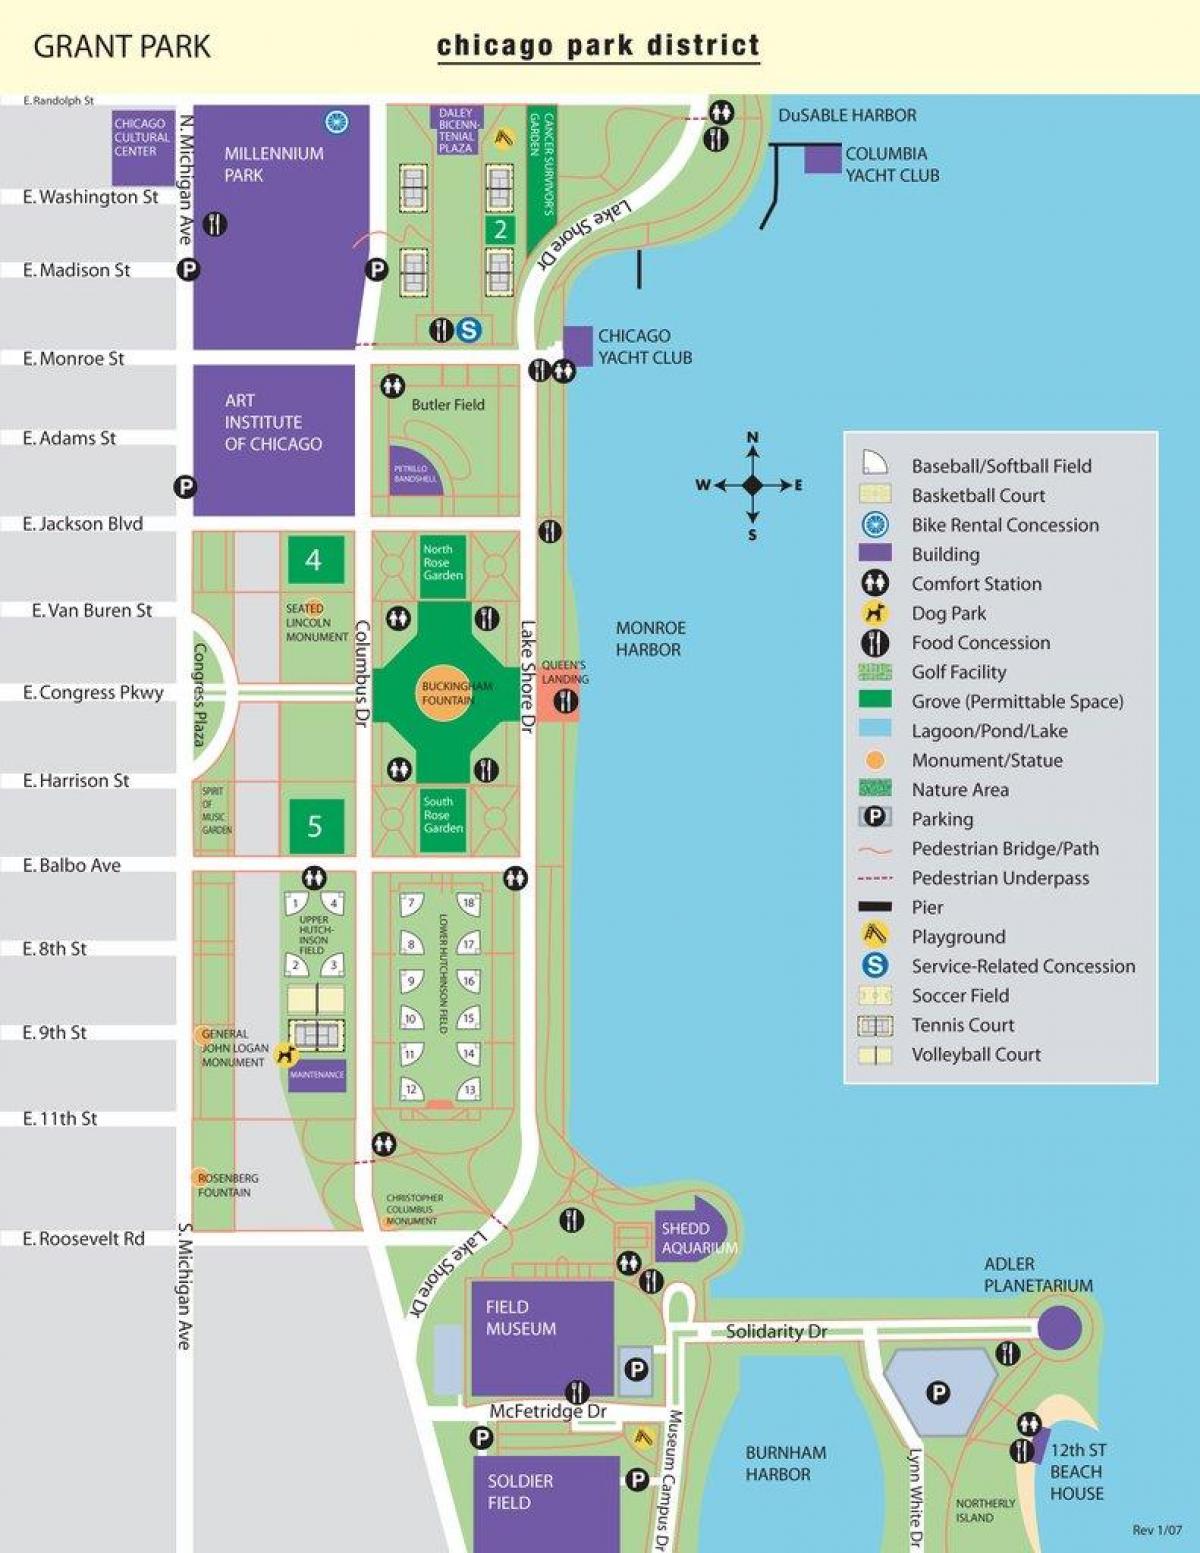 kaart van die grant park-Chicago